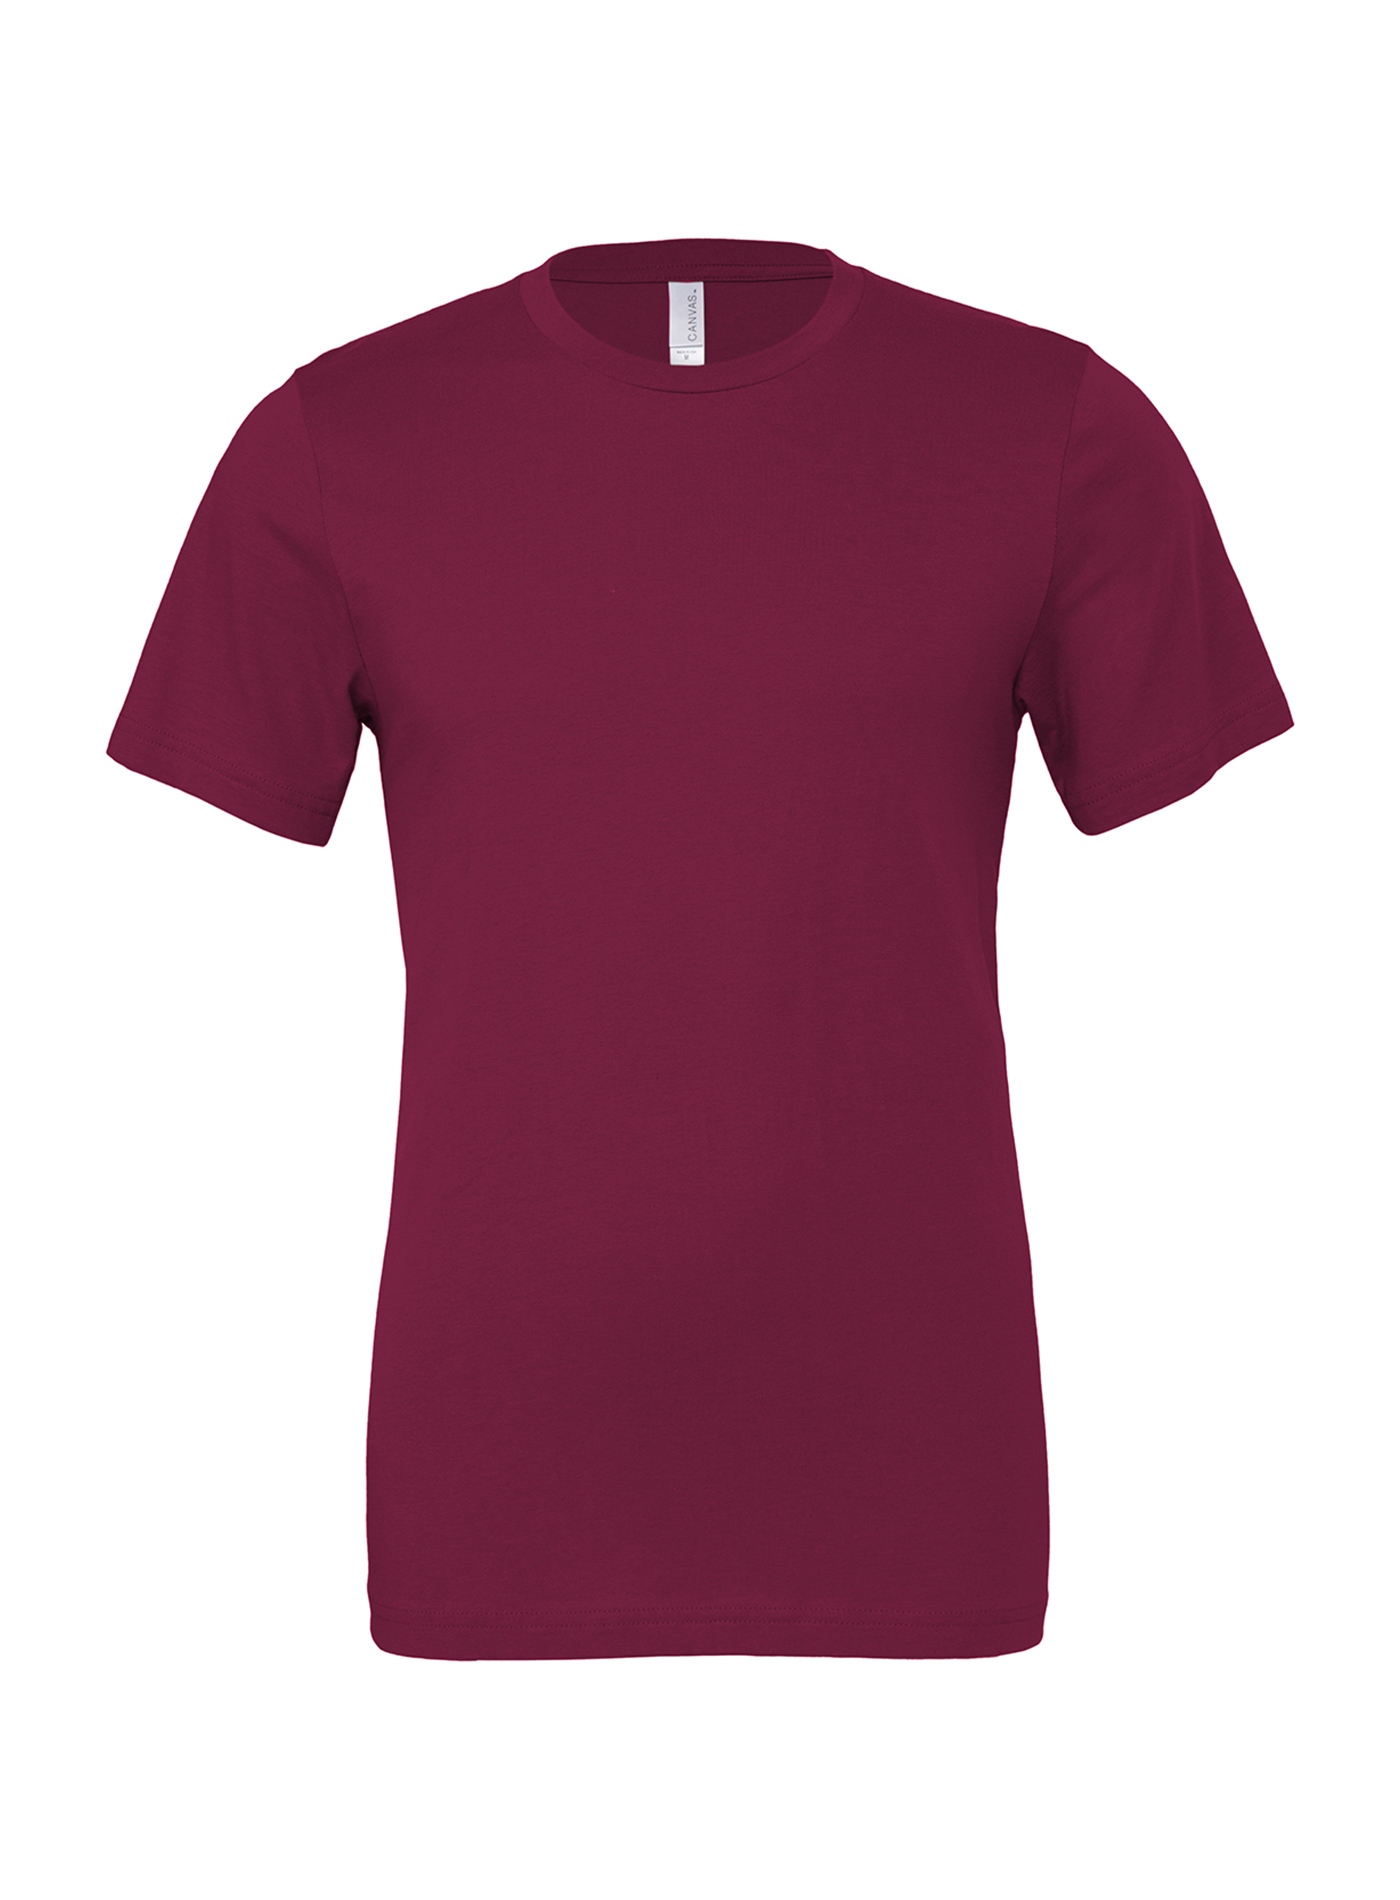 Unisex tričko Jersey - Červenofialová M